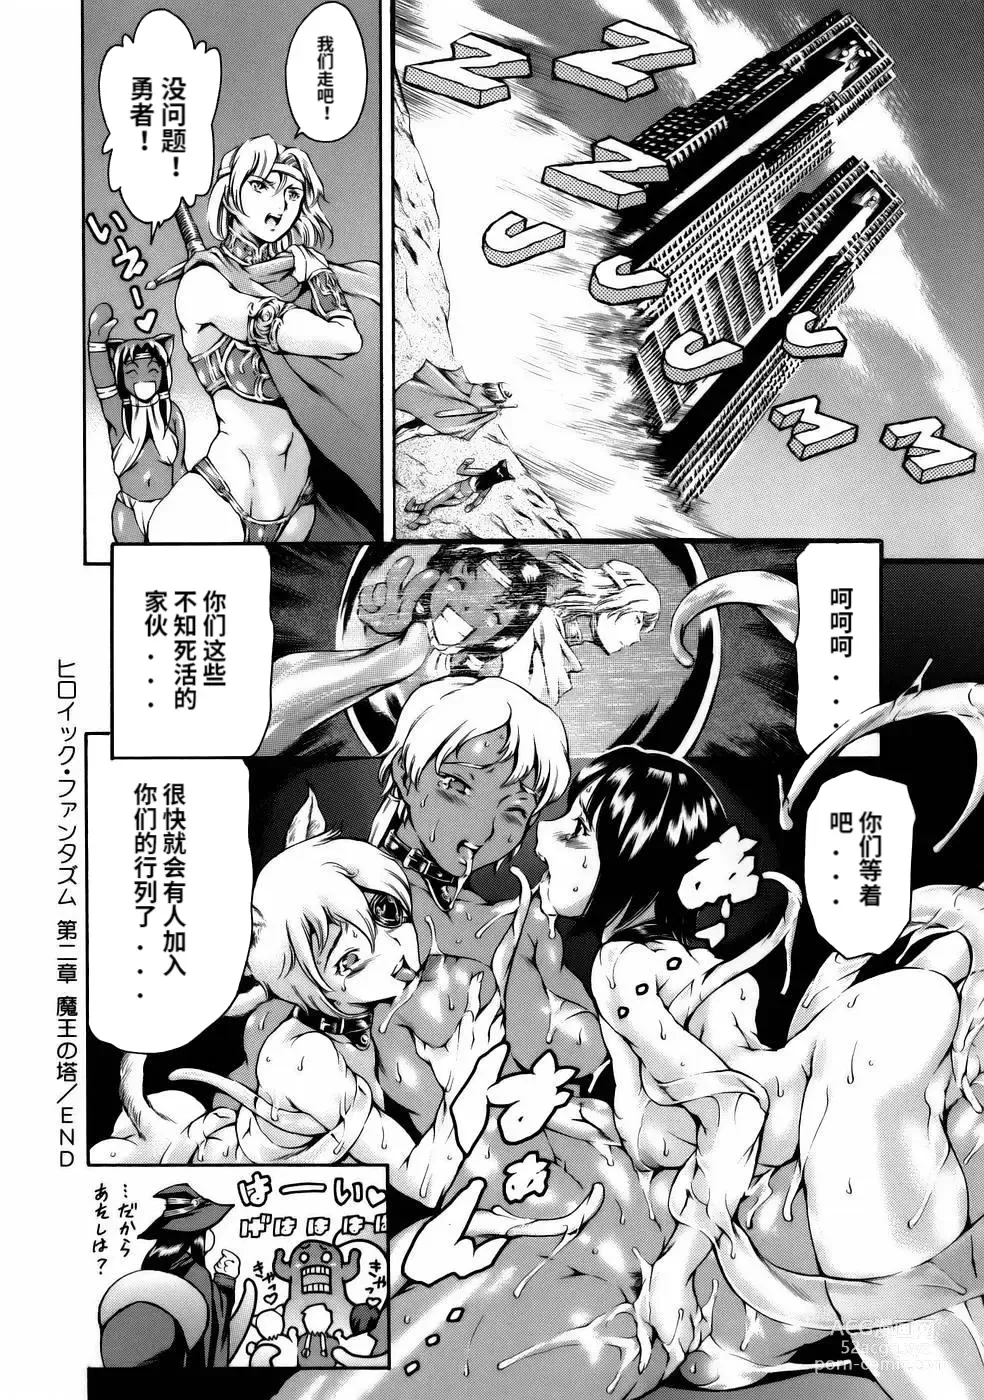 Page 174 of manga Manga Naze Nani Kyoushitsu